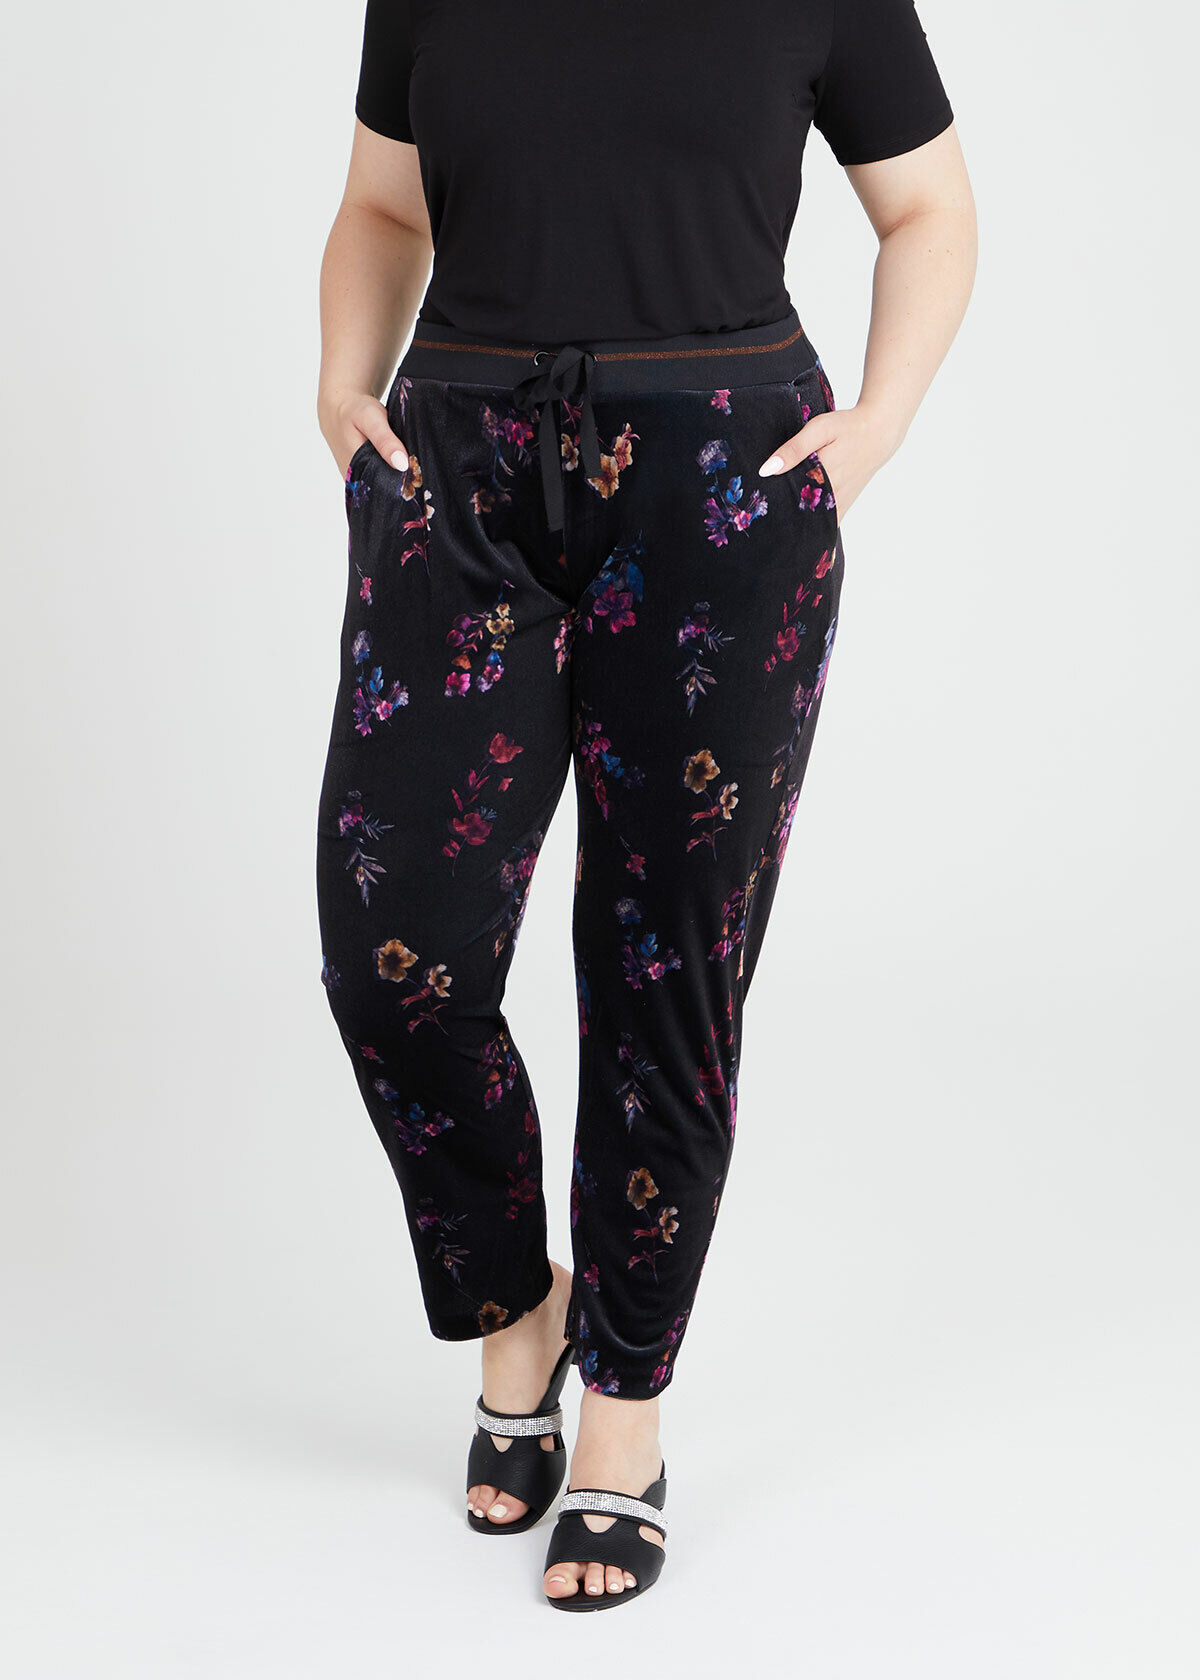 Velvet Jogger Pants (Plus Size - Black) – In Pursuit Mobile Boutique ||  Apparel, Accessories & Gifts Saint John, New Brunswick